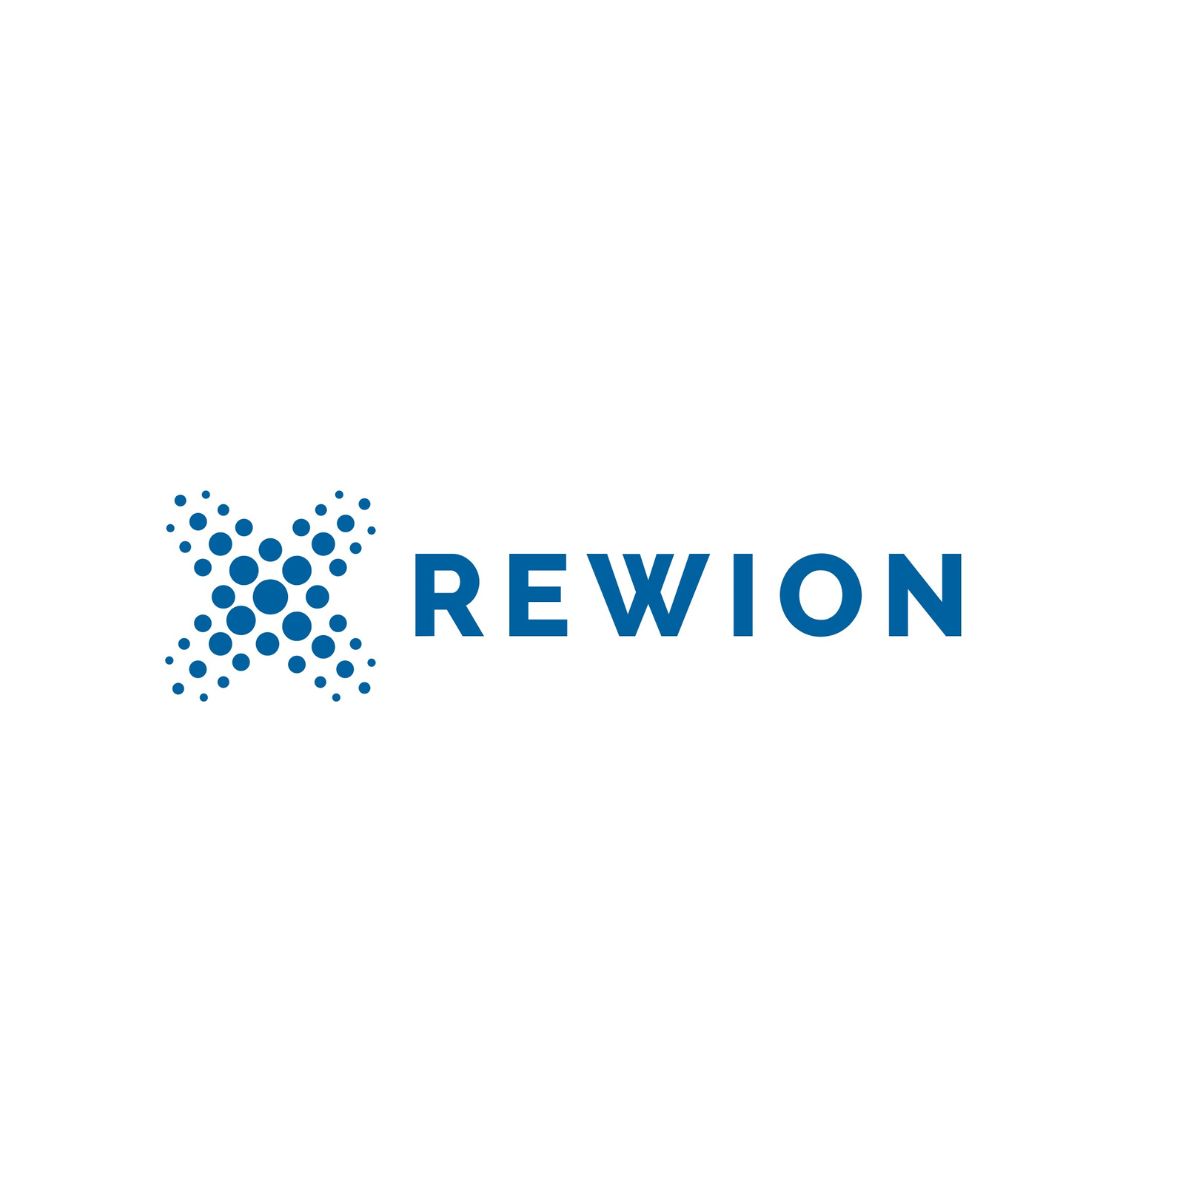 Rewion